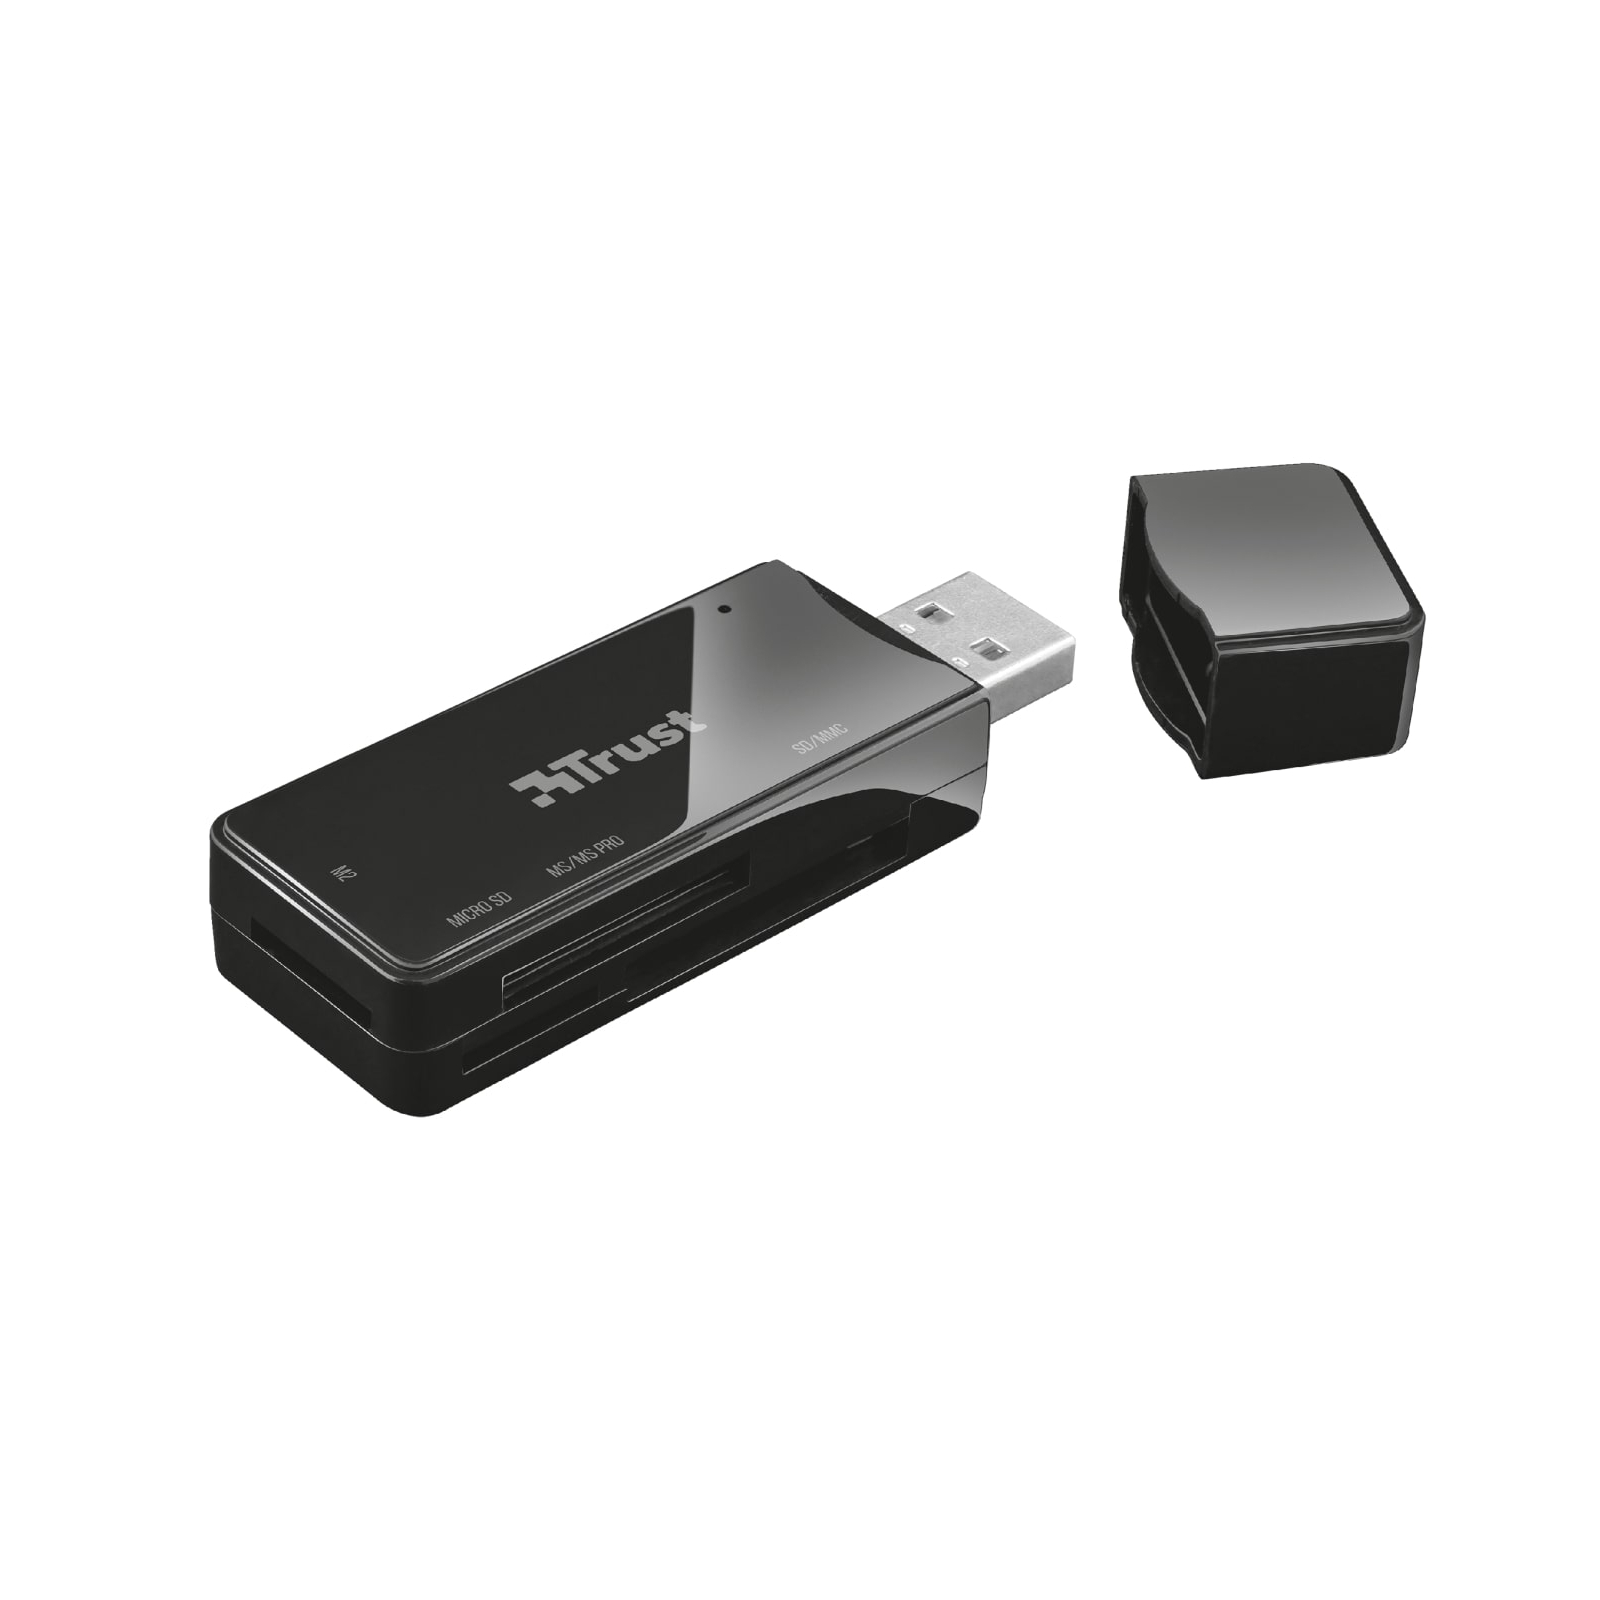 Зчитувач флеш-карт Trust Nanga USB 2.0 BLACK (21934) зображення 2